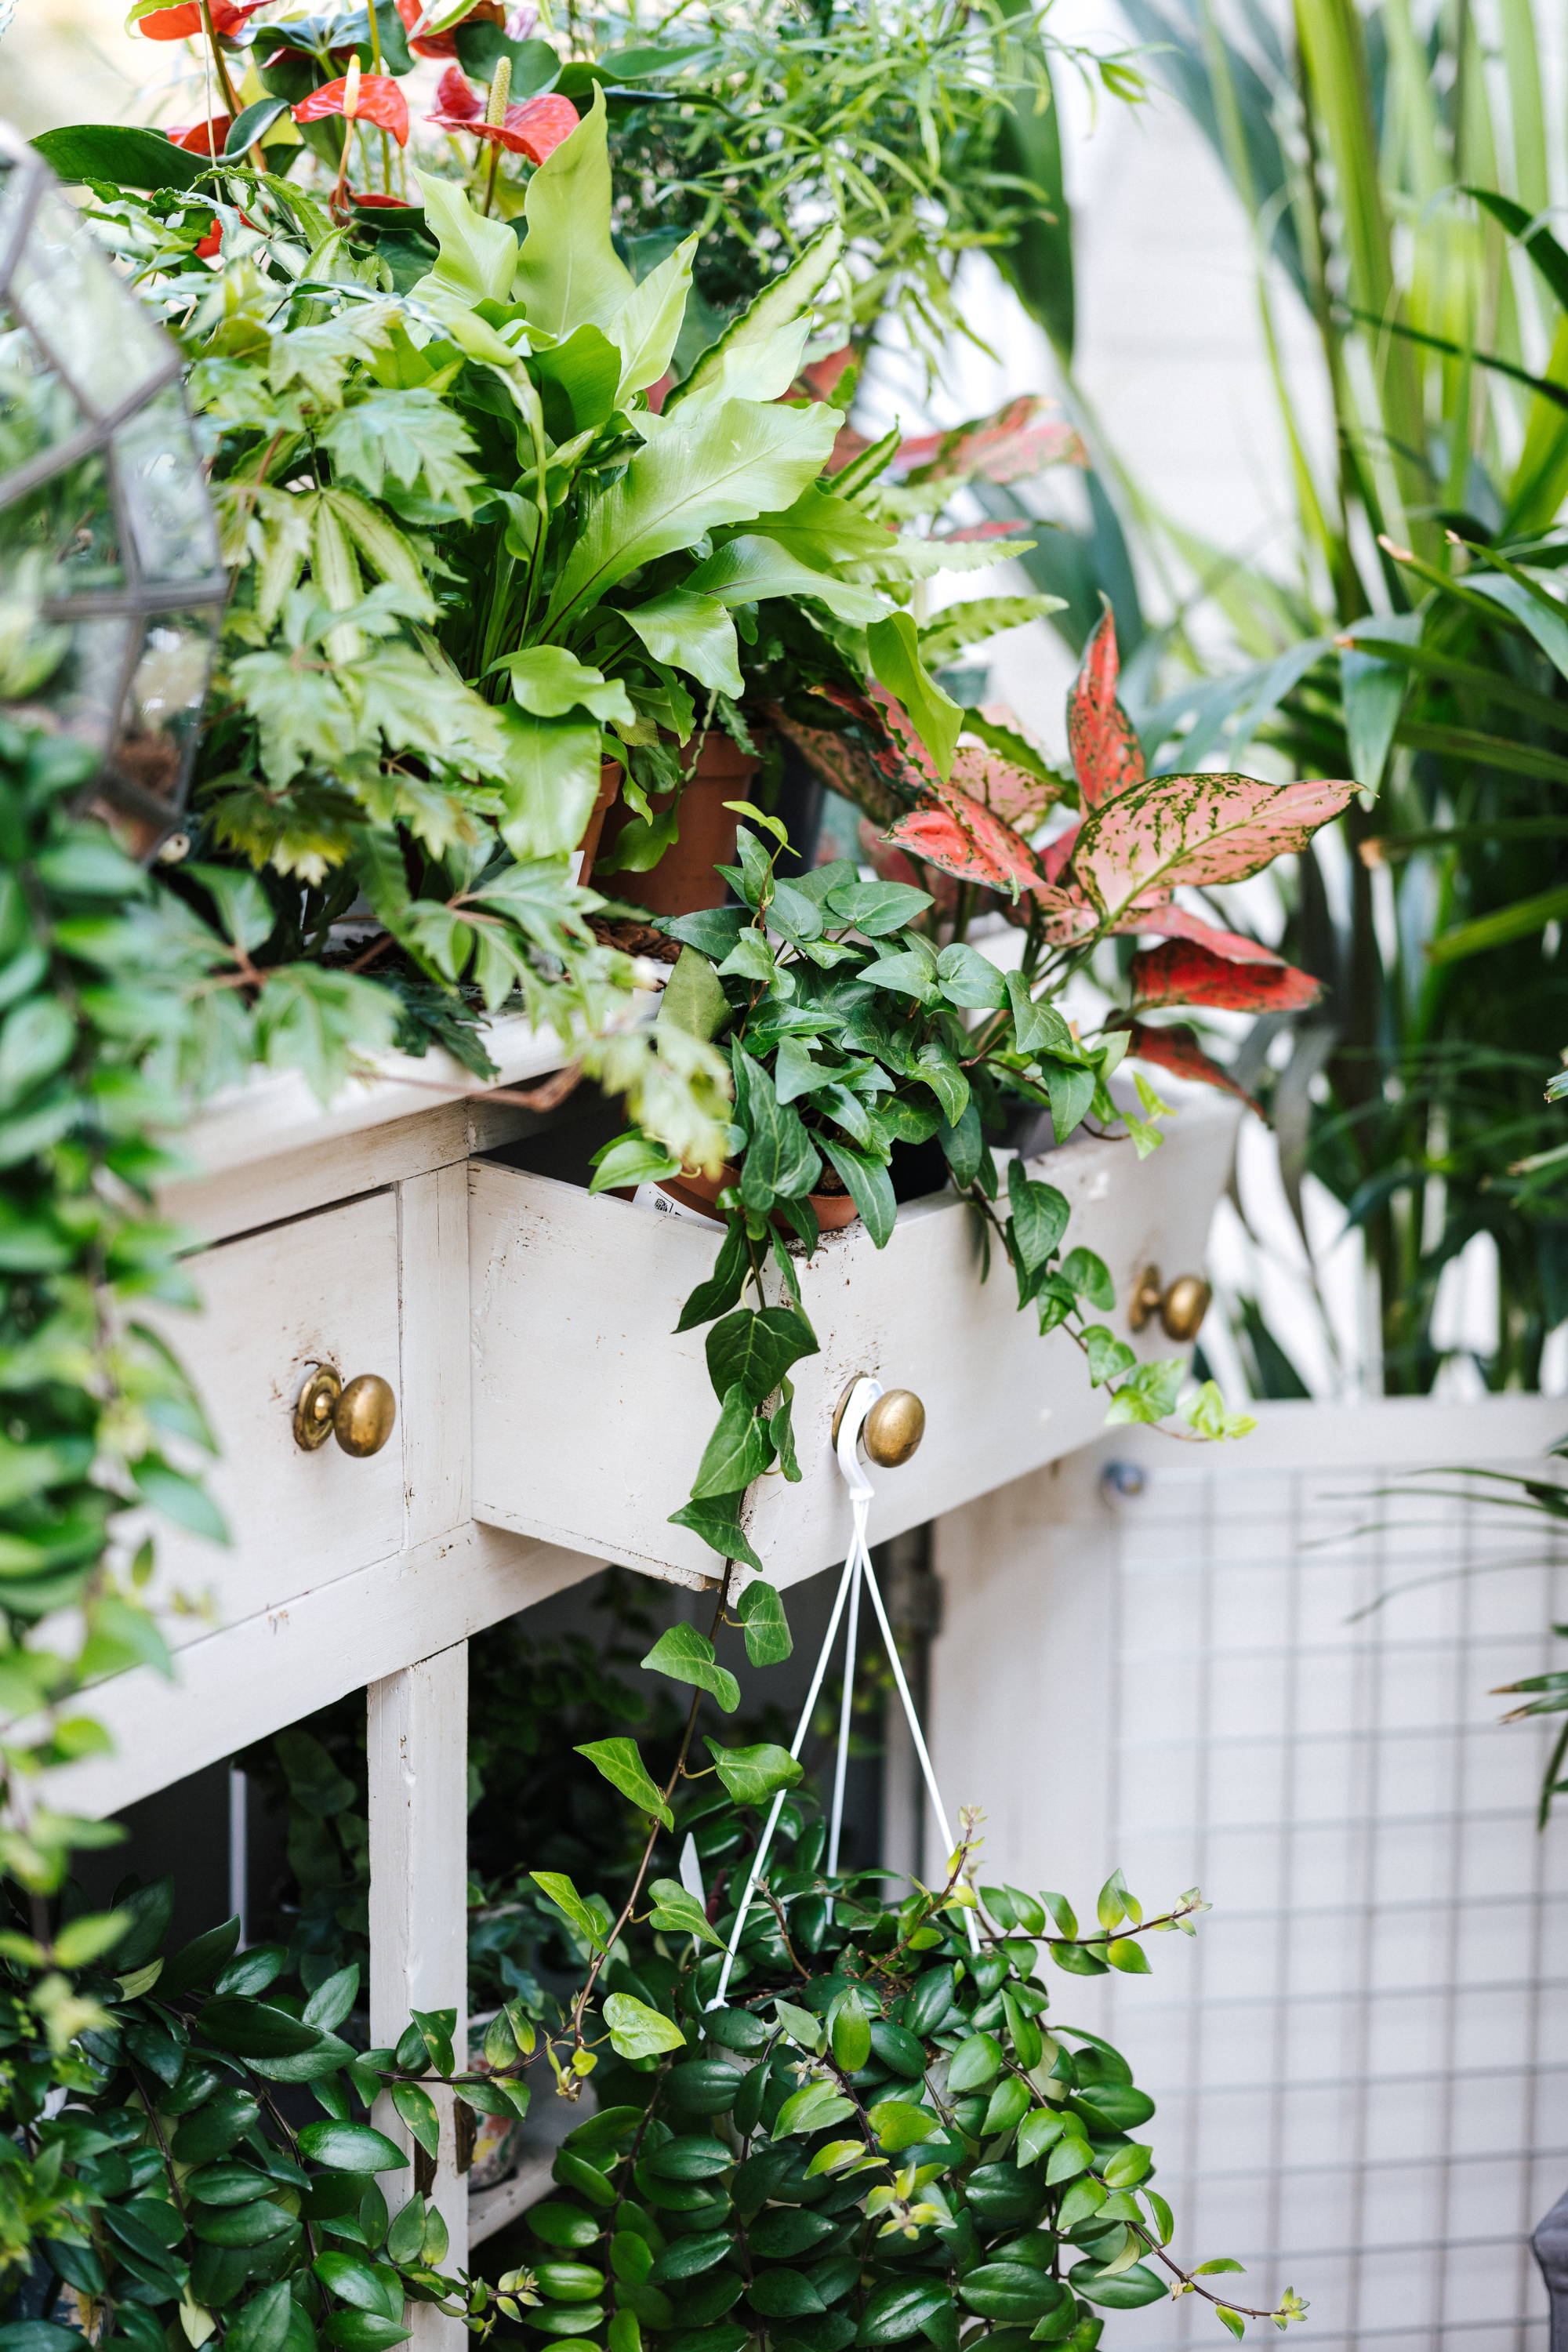 Light, bright plants, interior gardening inspiration